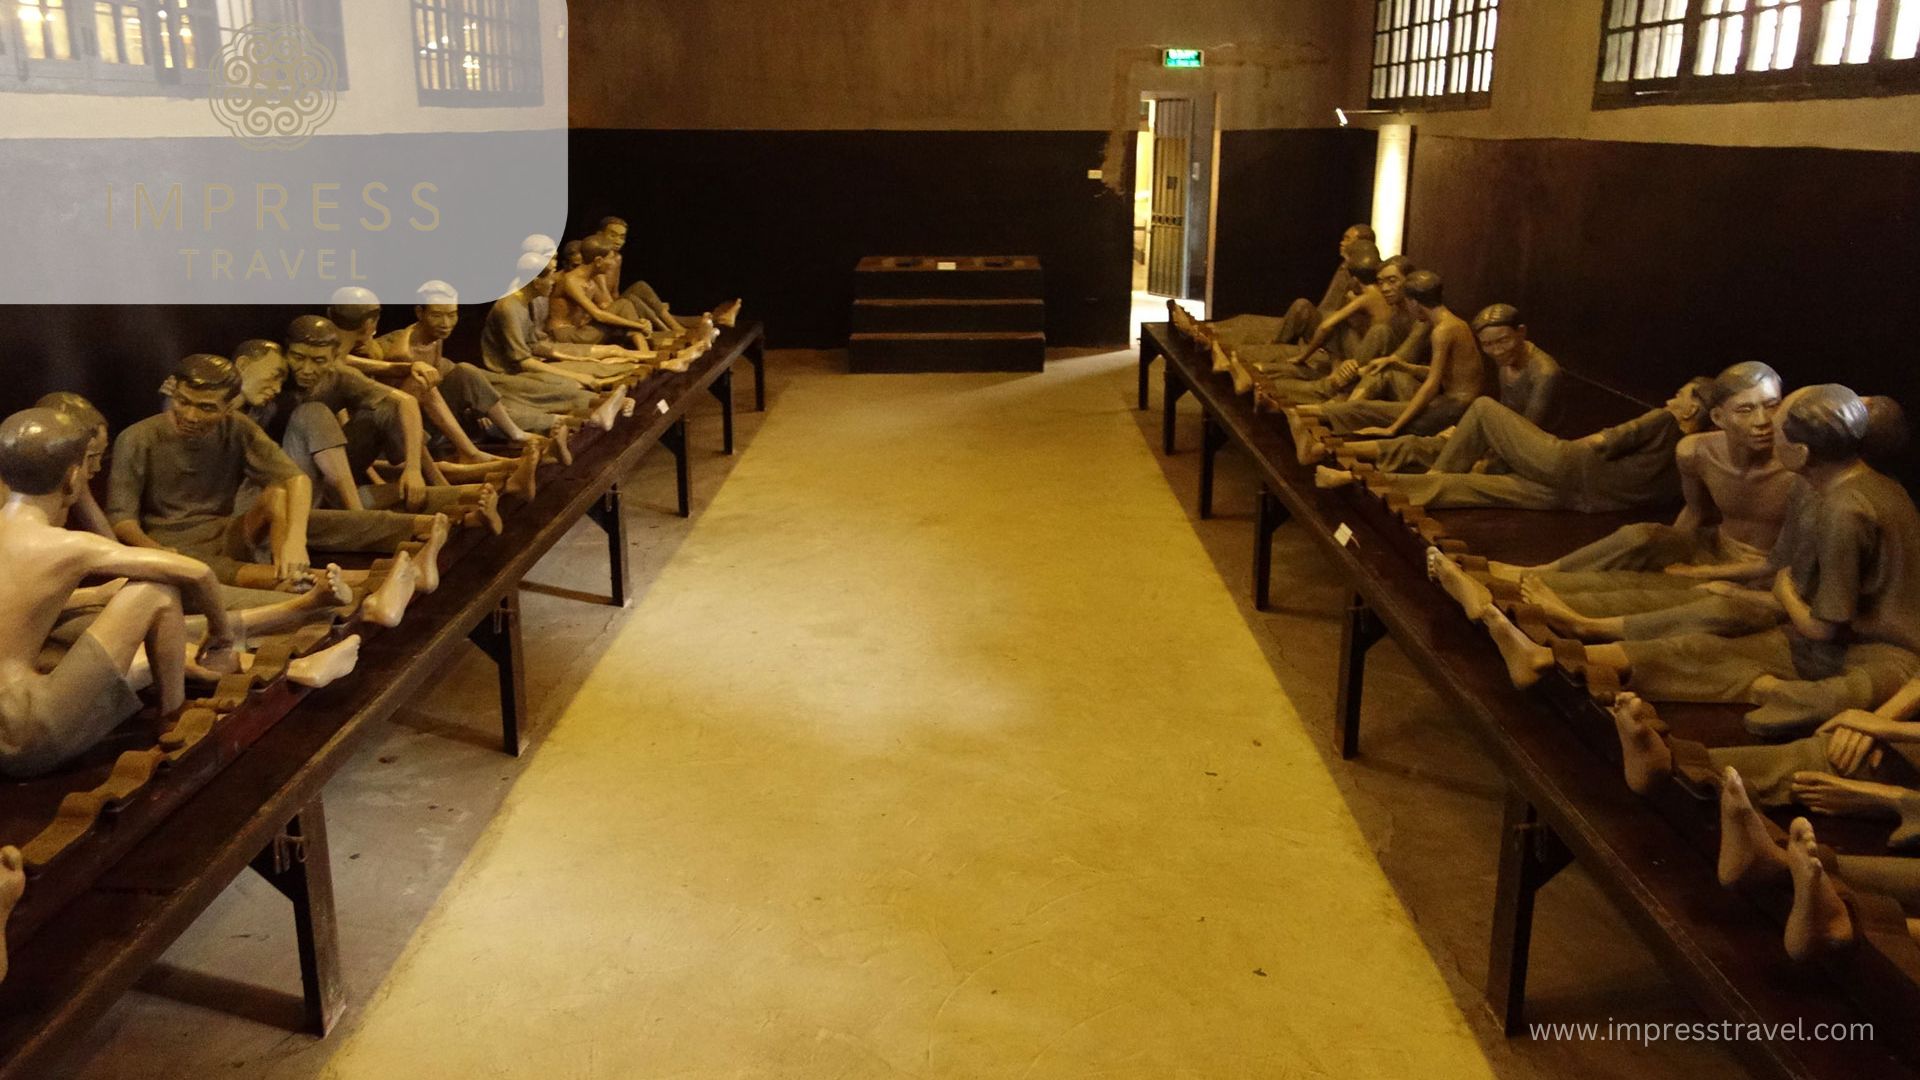 Cachot area - bare prison